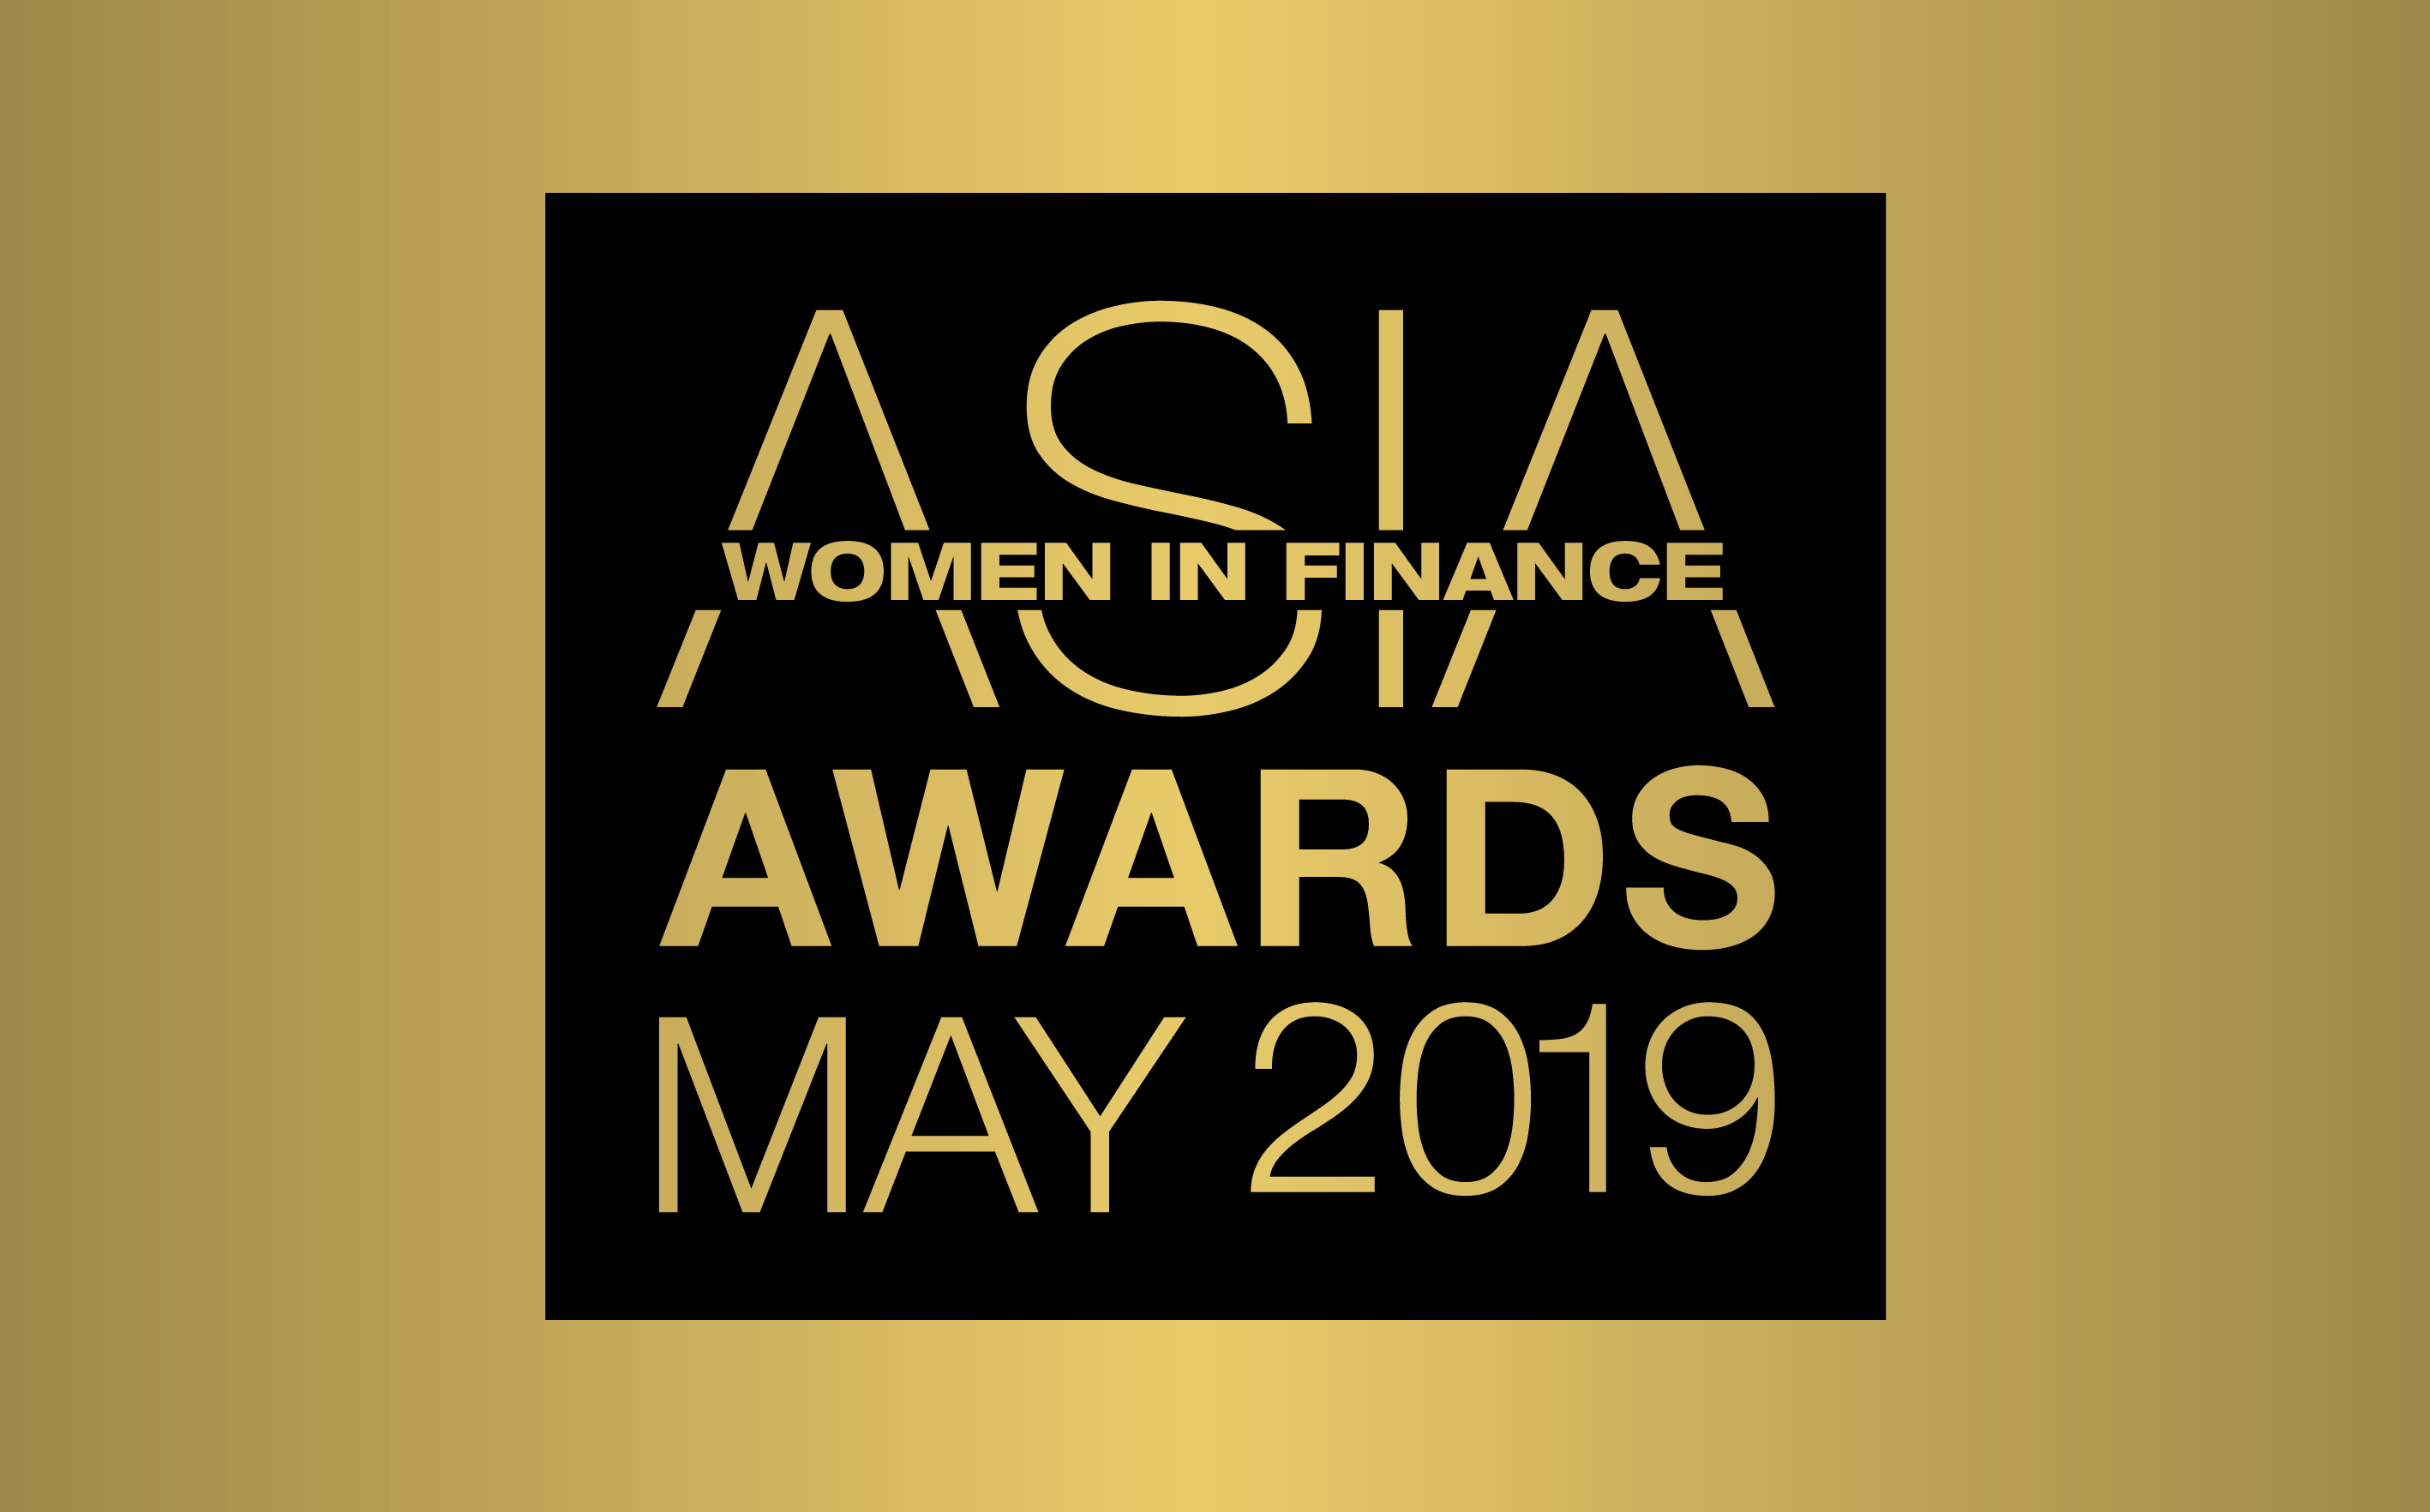 WOMEN IN FINANCE AWARDS ASIA 2019